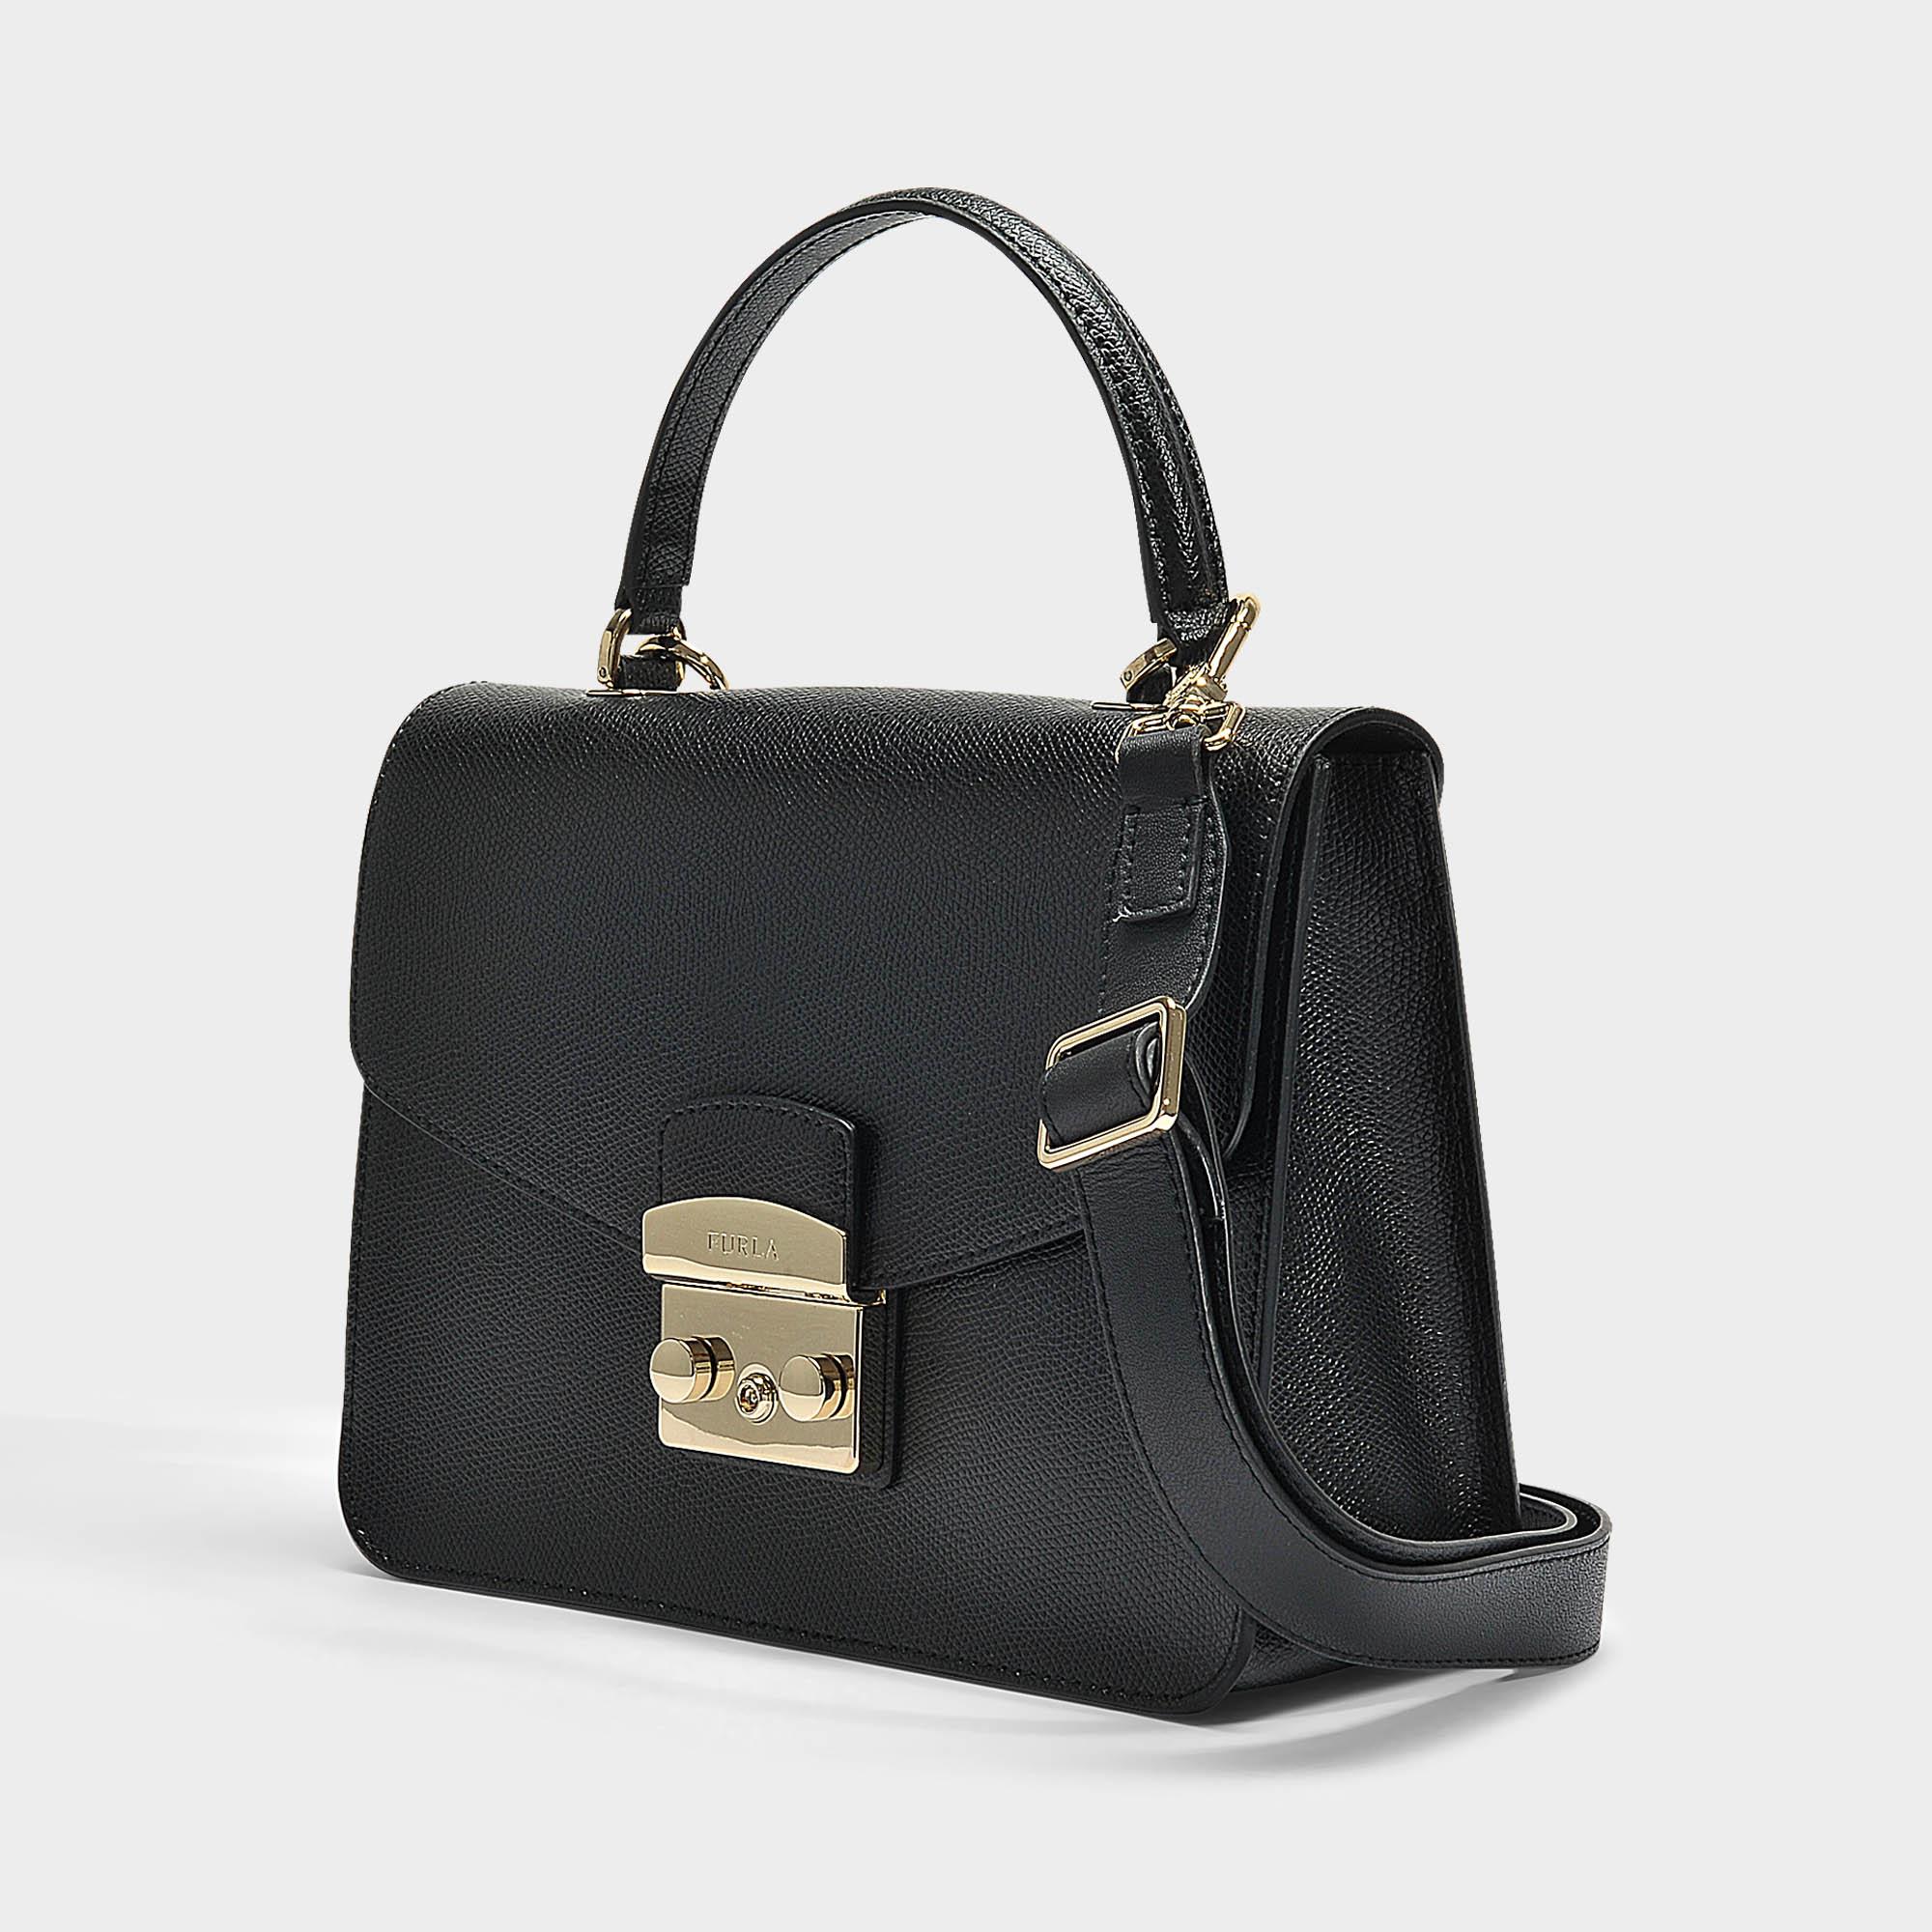 Furla Metropolis Small Top Handle Bag In Black Calfskin - Lyst